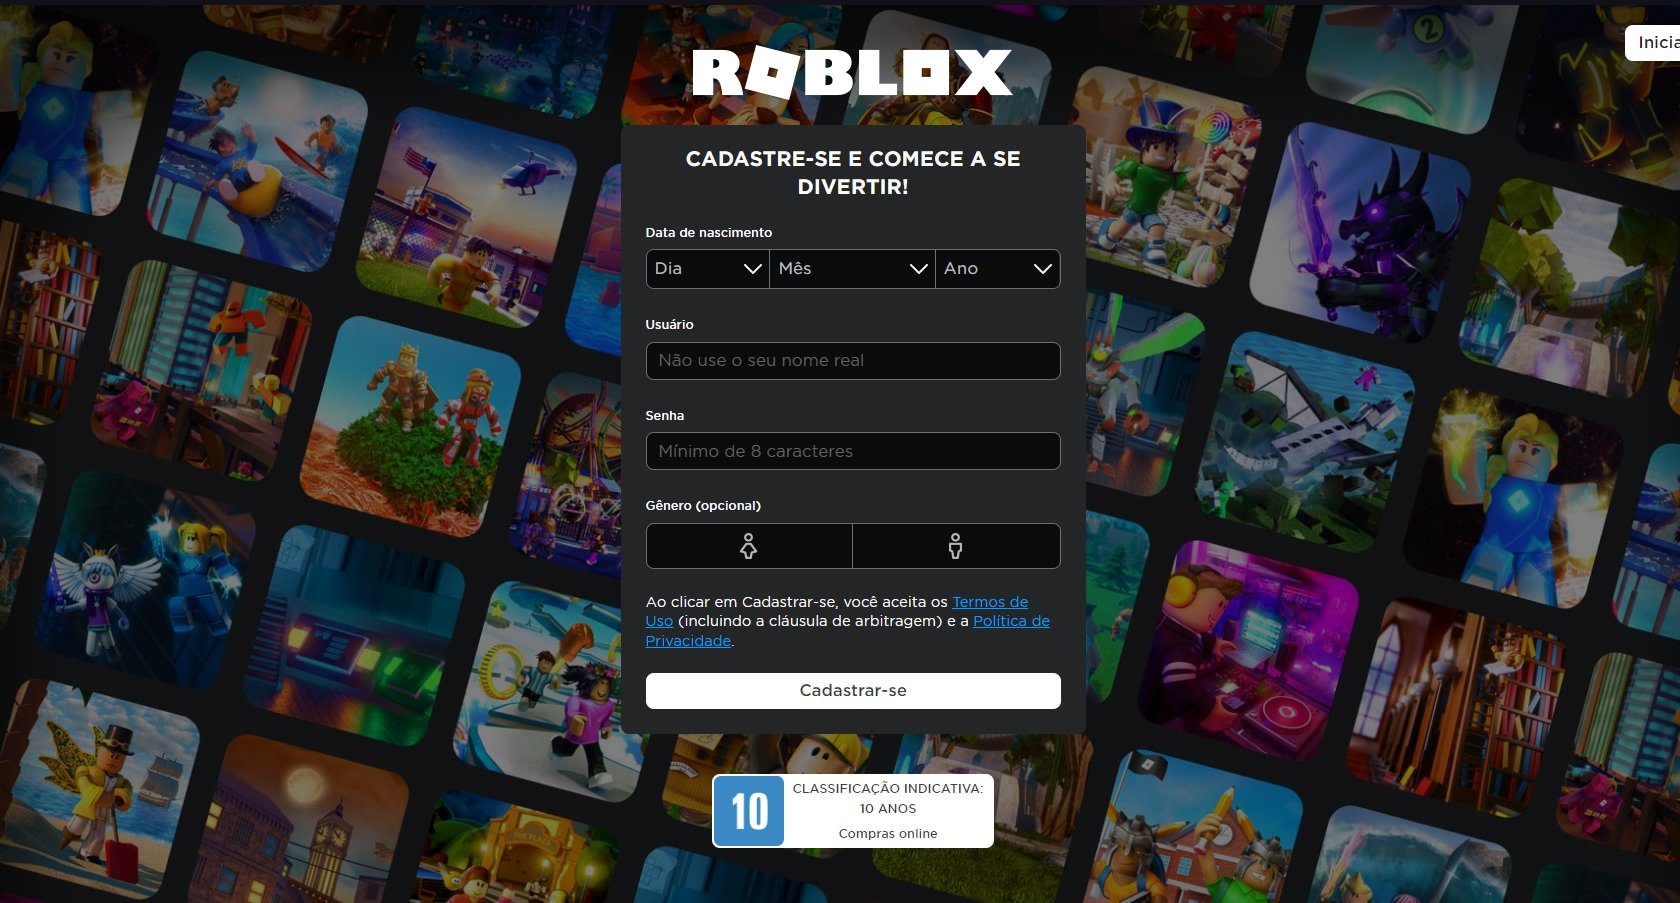 RN Noticias — Roblox 📰 on X: 🚫 La función de inicio de sesión con  Facebook en #Roblox ha sido eliminada por completo.    / X